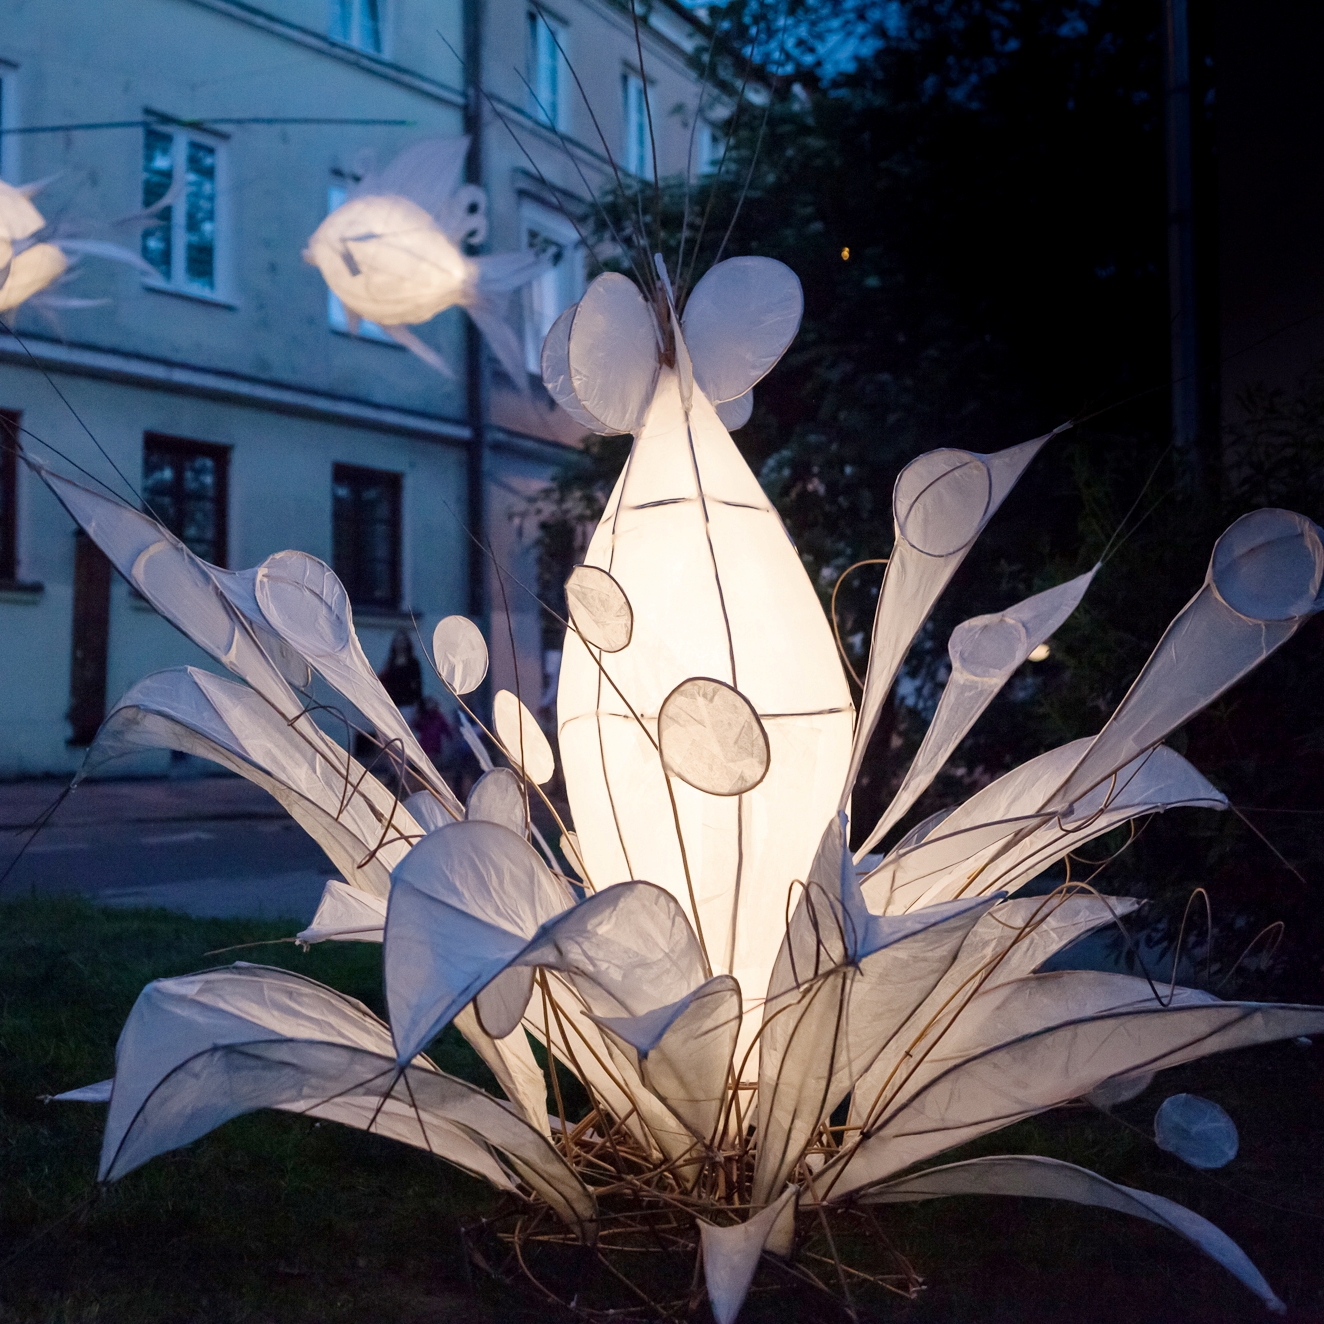 Instalacja artystyczna podświetlanego kwiatu.